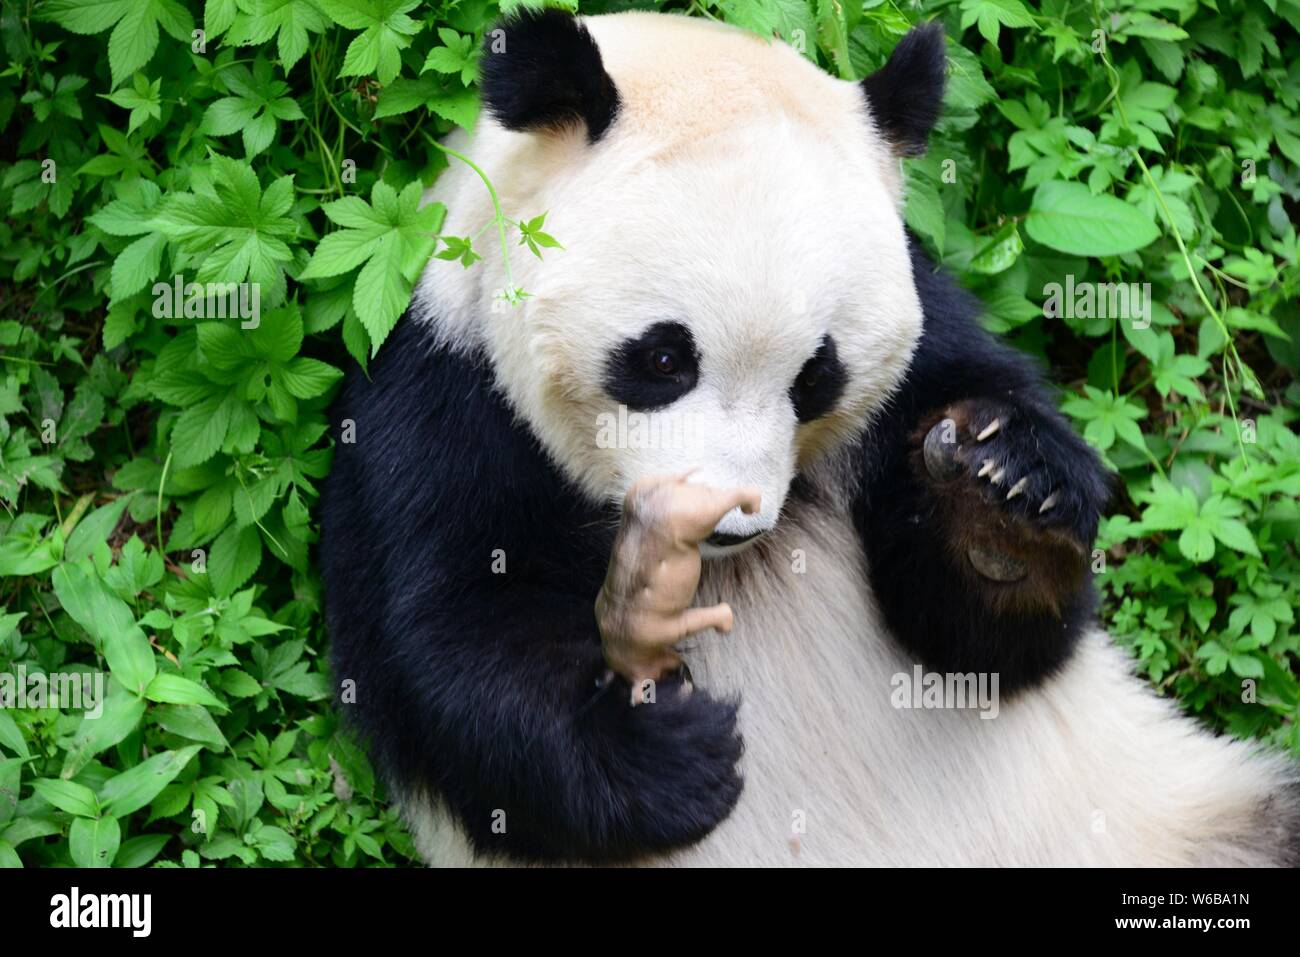 Un panda géant embrasse un rhino jouet dans ses bras au Zoo de Pékin à Beijing, Chine, 19 mai 2018. Un panda géant embrassé une rhino jouet dans ses bras et kis Banque D'Images